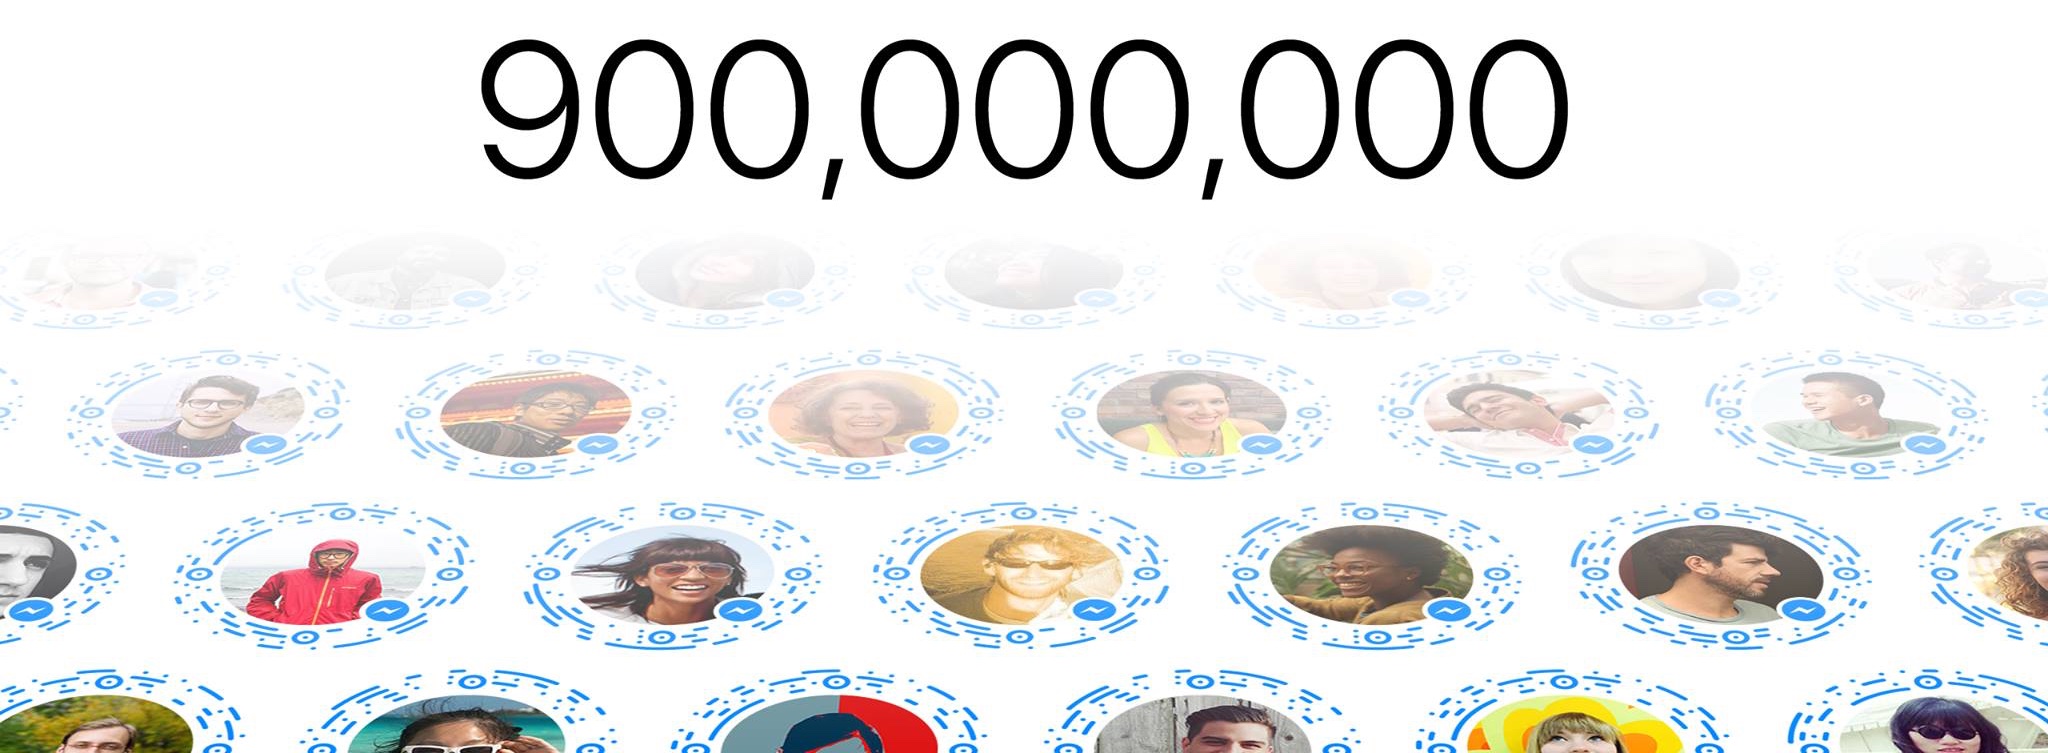 Facebook-Messenger-900-million-users-teaser-001